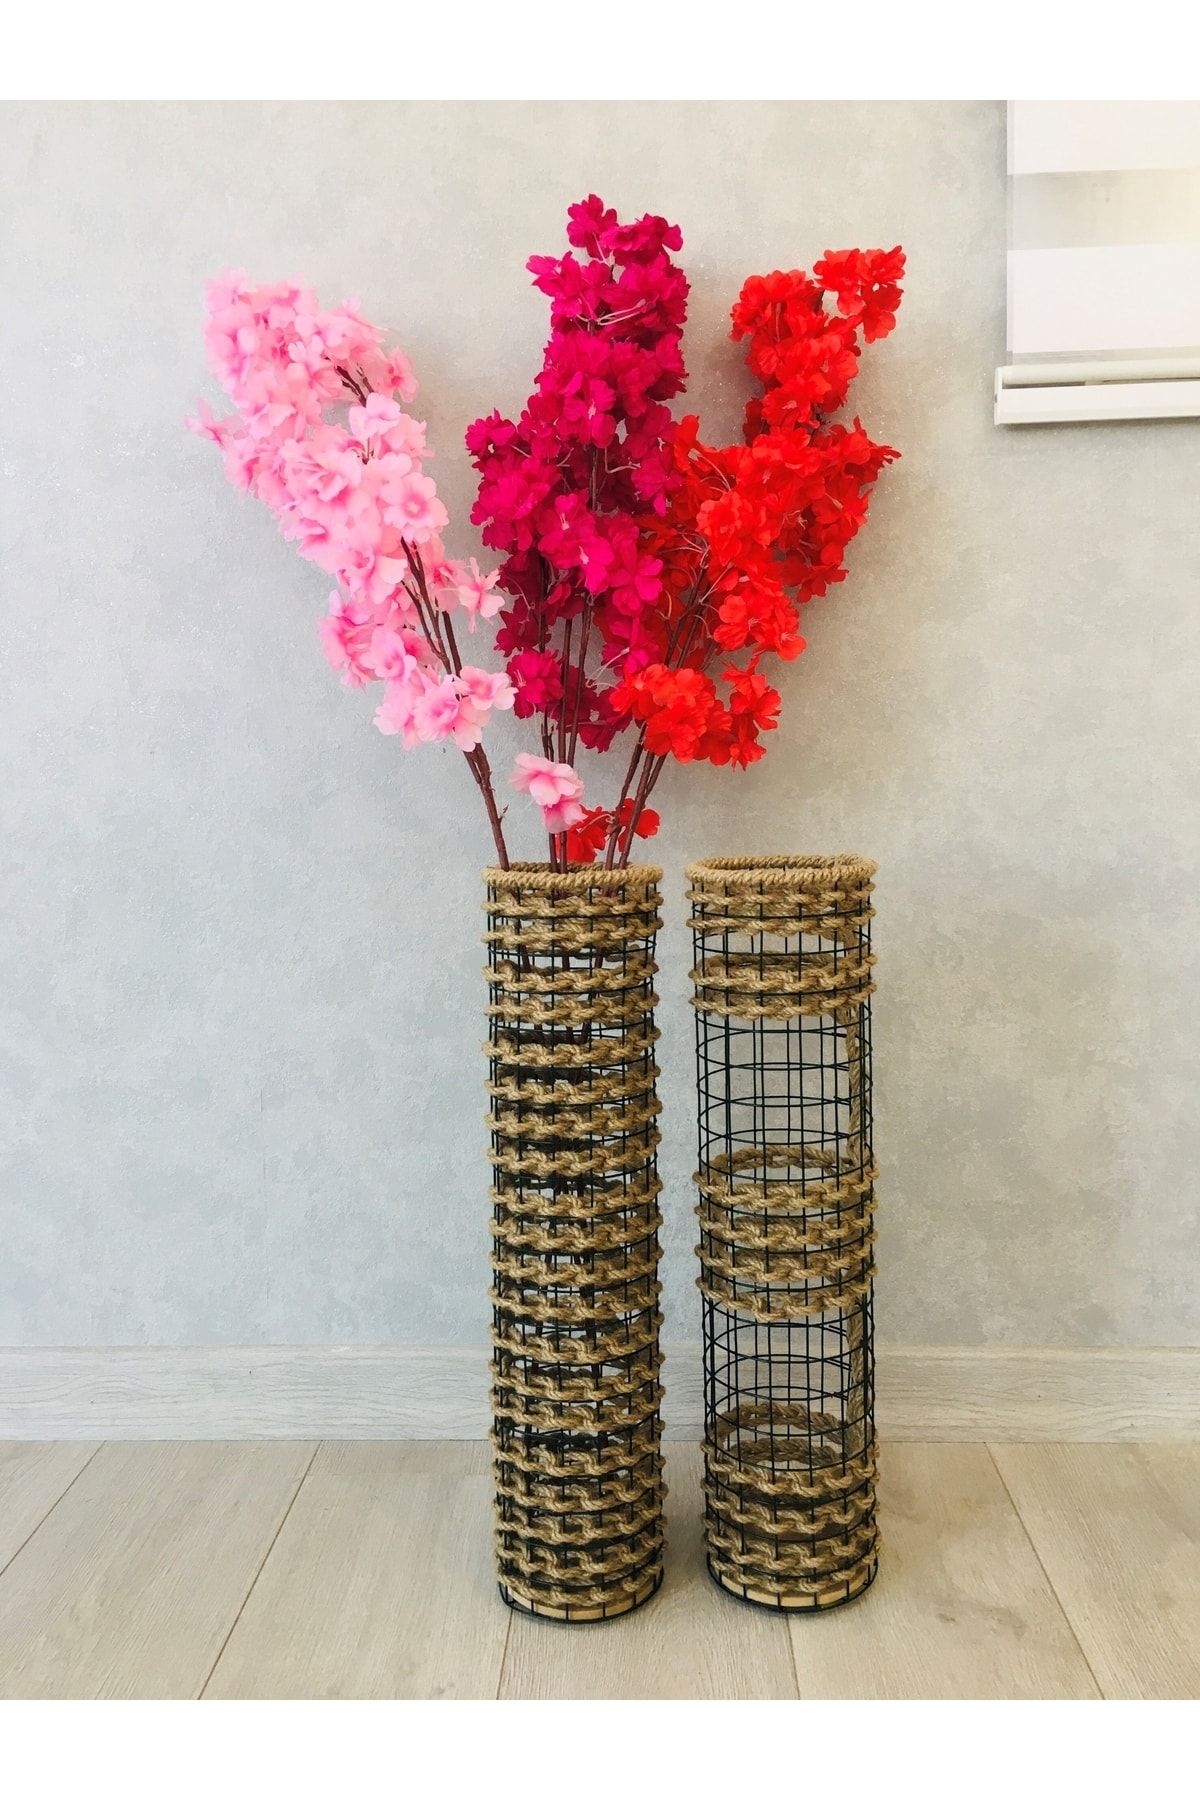 Asenya Hasır Örgü Vazo 2 Li Set 50 Cm Ve 50 Cm Çiçeklik Yapay Çiçek Vazosu Dekoratif Saksı